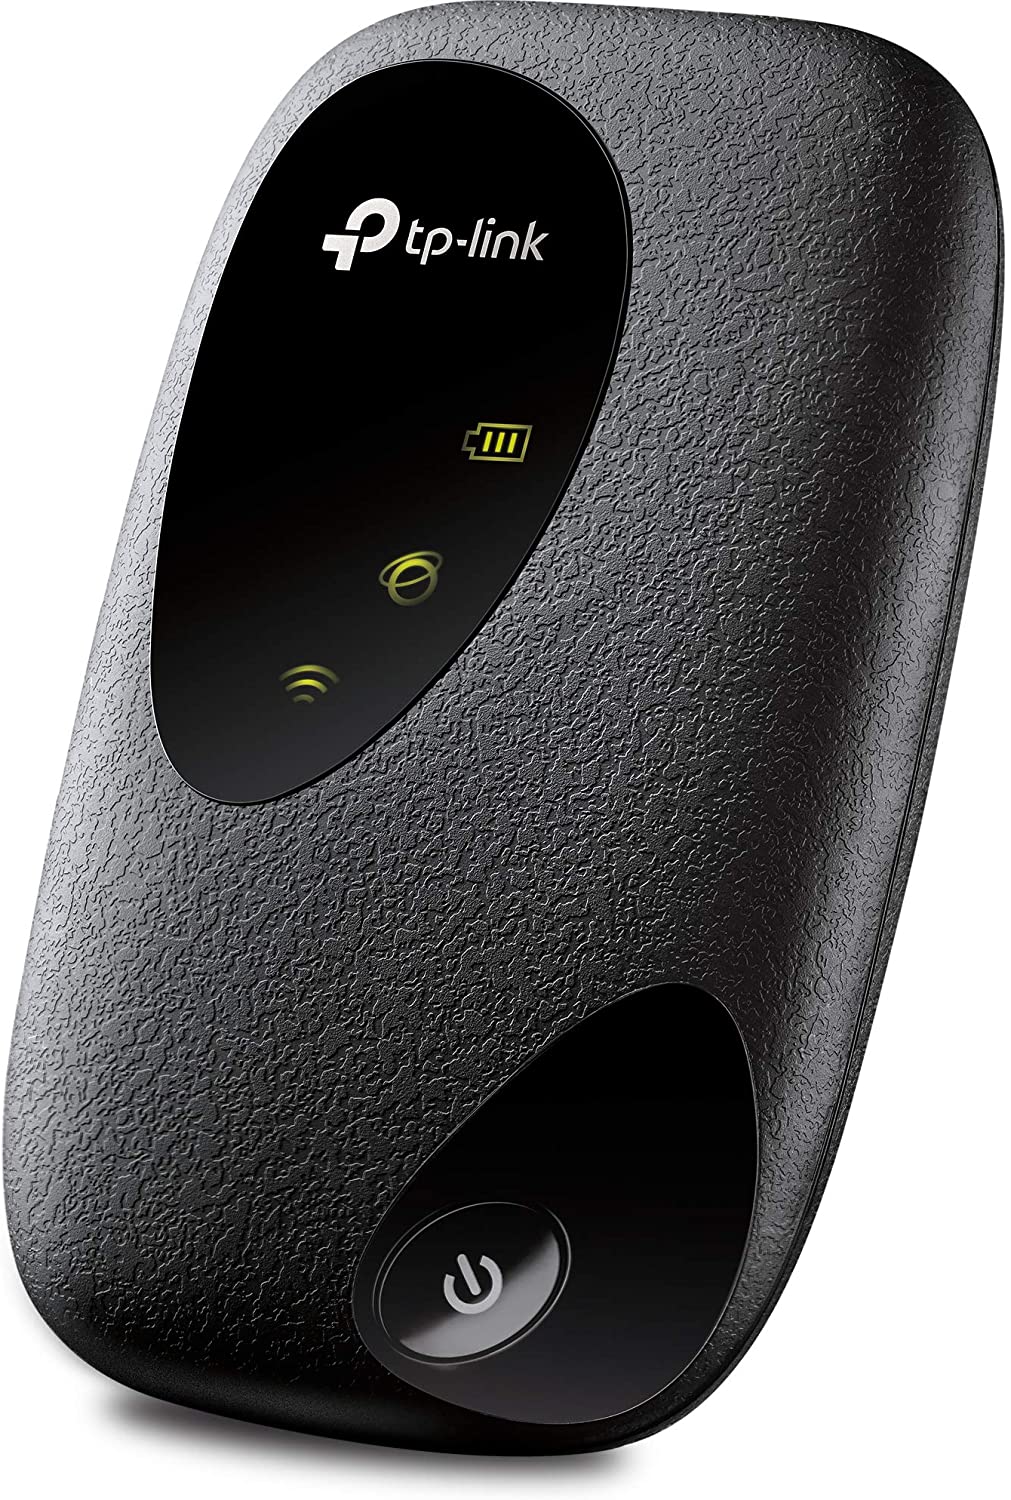 TP-Link M7200 Mobile Router Hotspot Portatile, 4G LTE Cat4 150 Mbps, Vincitore del premio red dot design, può essere utilizzato in tutti i paesi europei, ieee 802.11b / g / n frequenza: 2.4 ghz